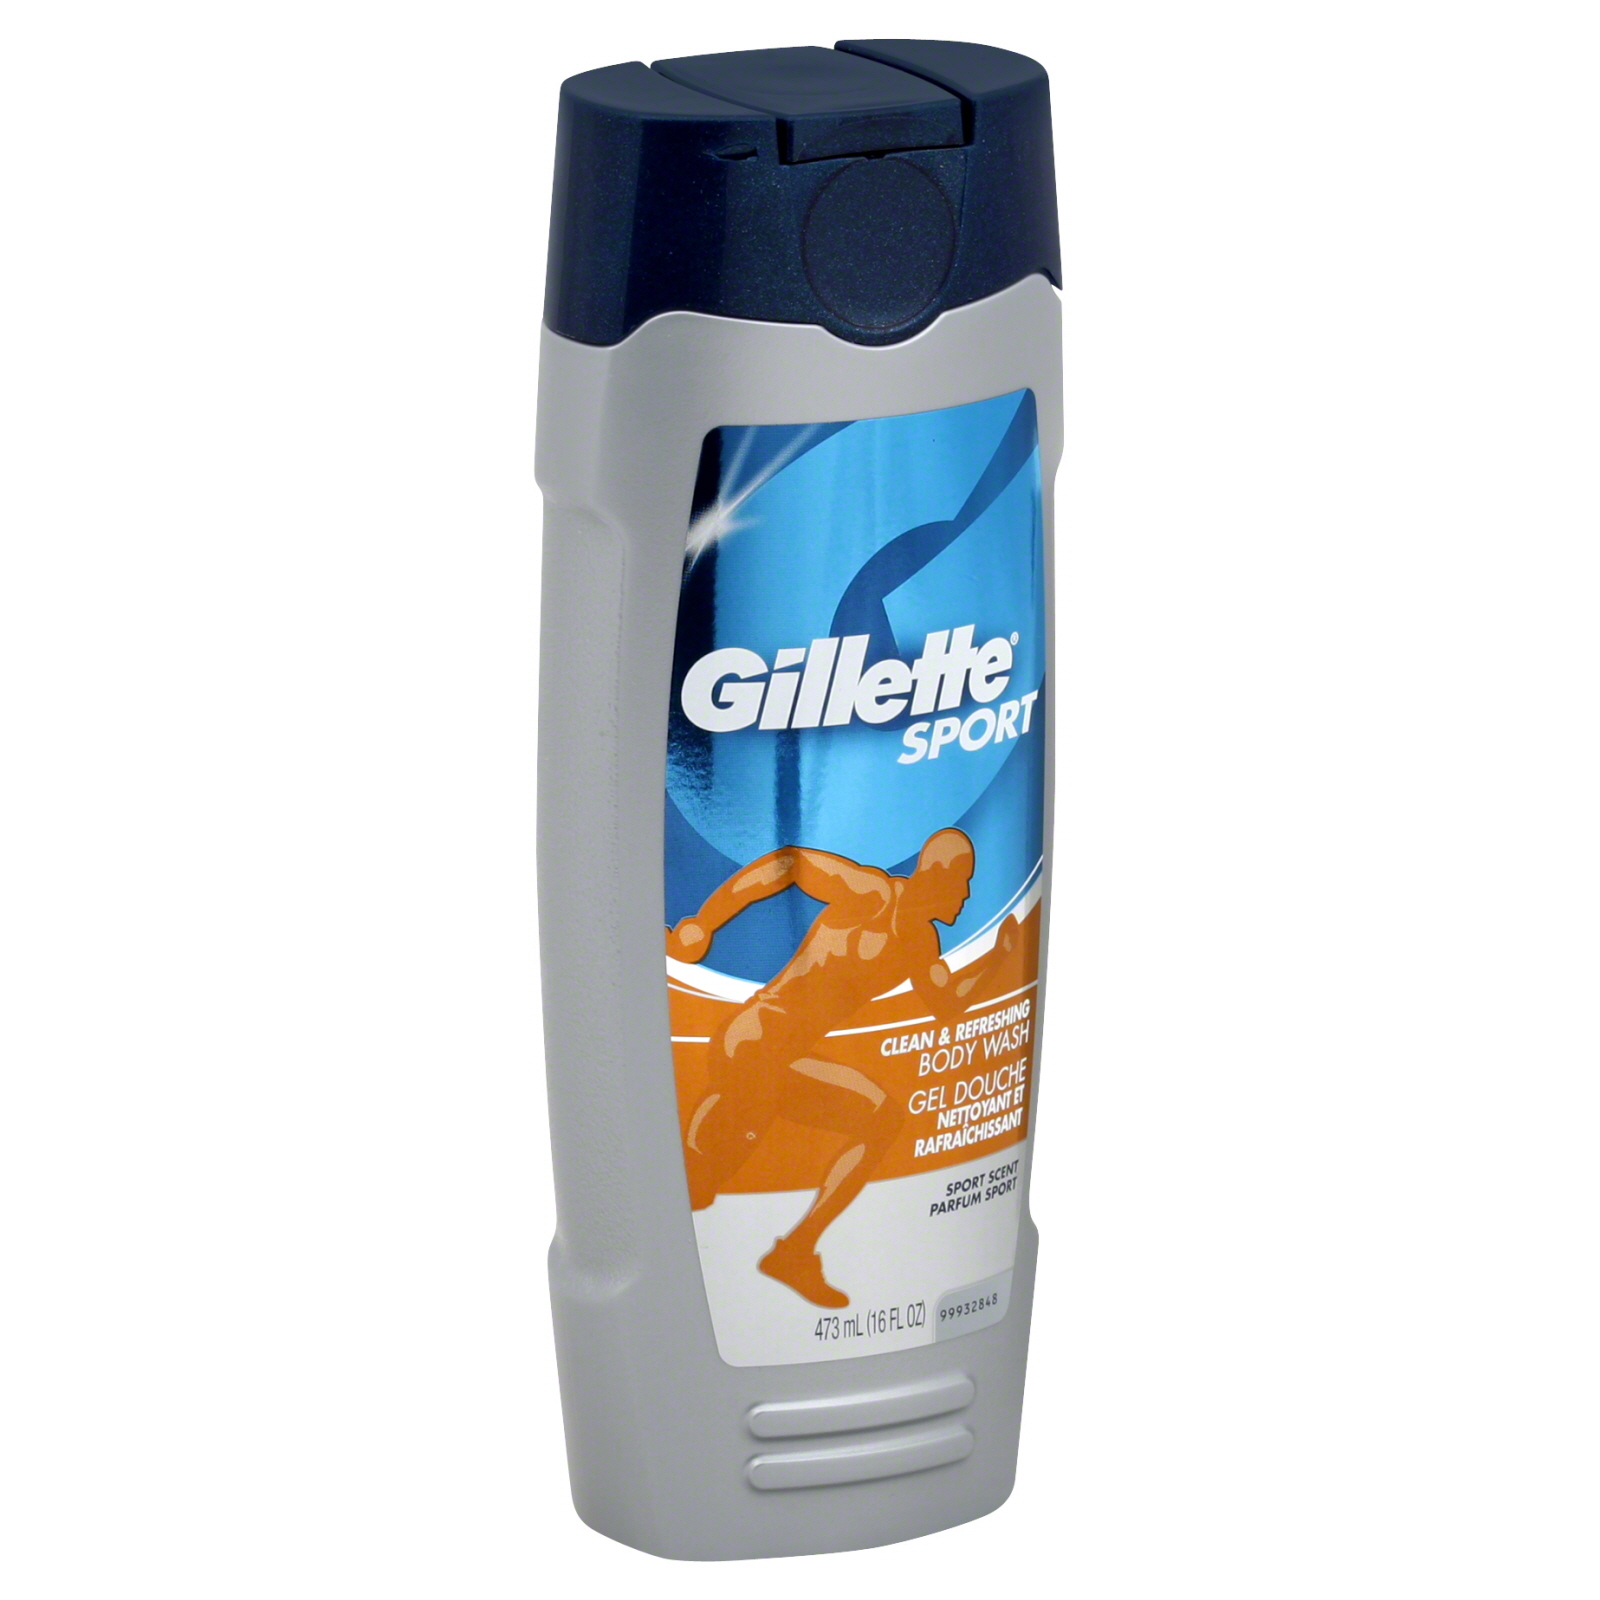 Gillette Sport  Body Wash, Clean & Refreshing, Sport Scent, 16 fl oz